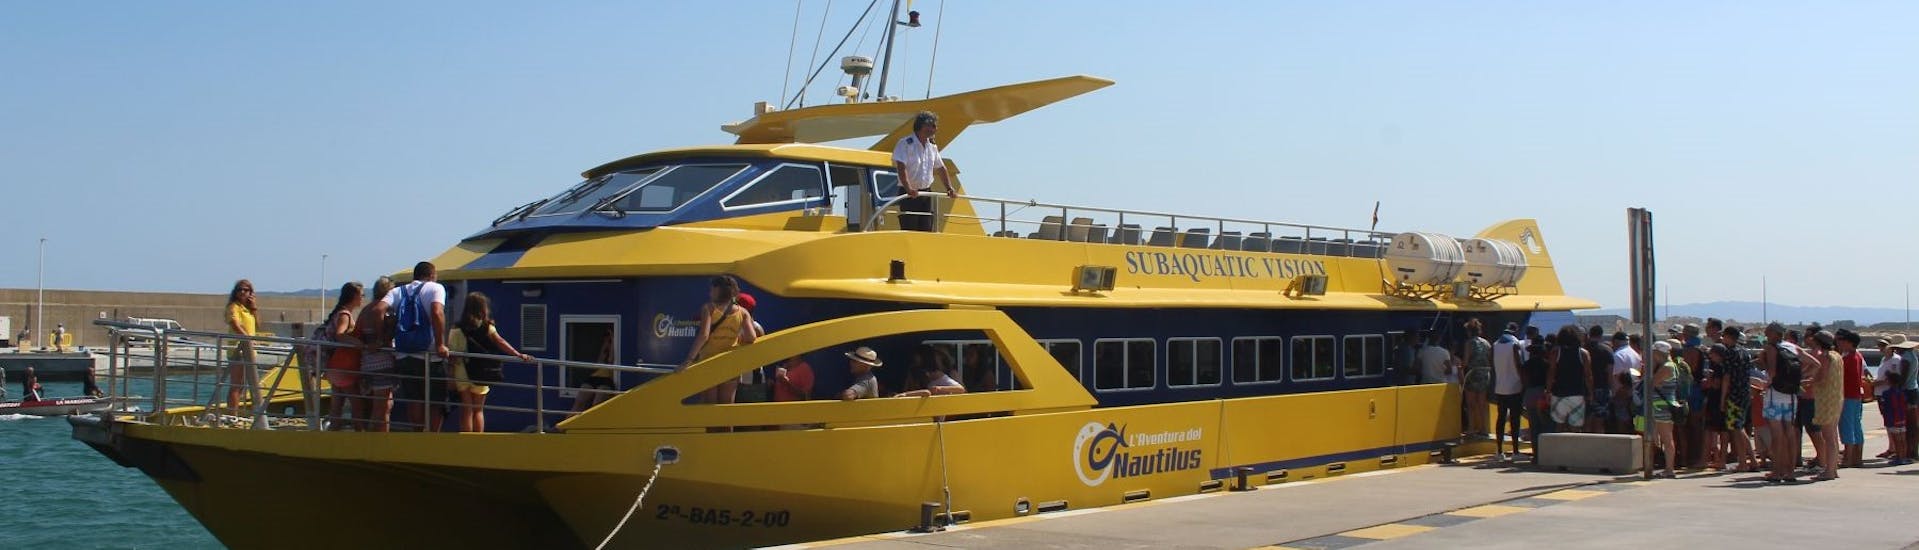 El barco utilizado durante el viaje en autobús y barco por la Costa Brava hasta Estartit, Islas Medas y Empúries.